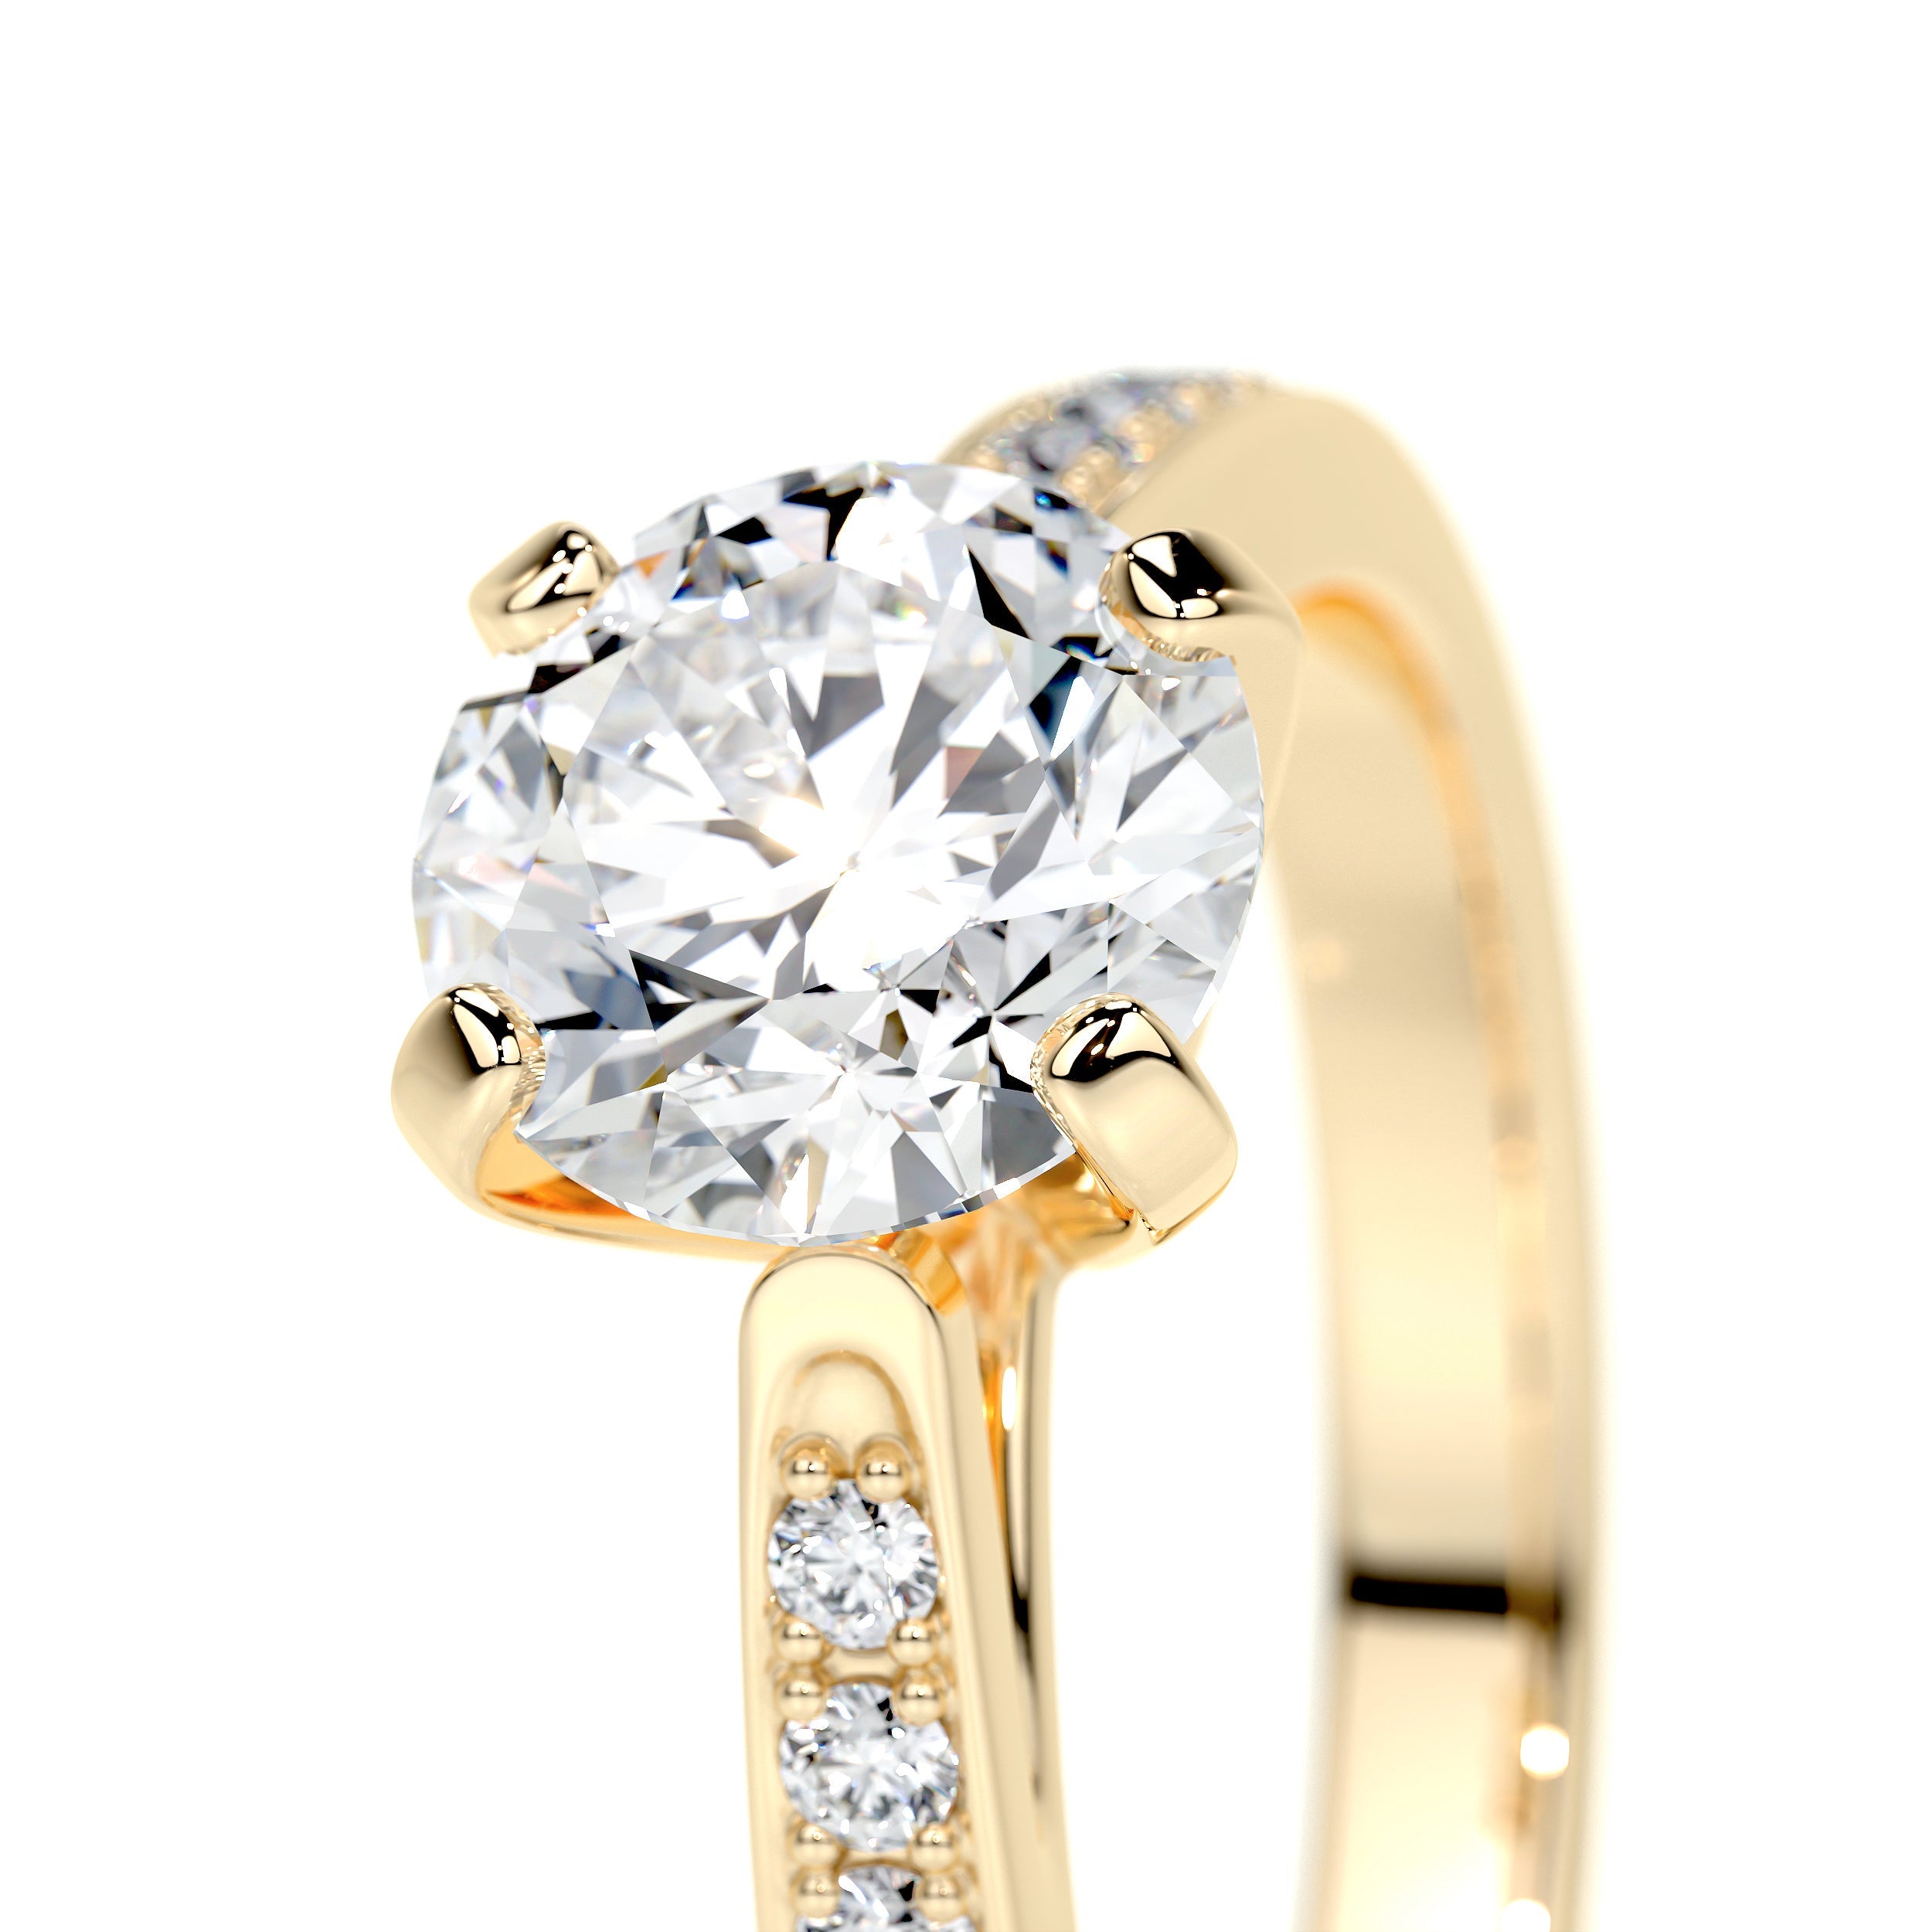 Margaret Lab Grown Diamond Ring   (1.35 Carat) -18K Yellow Gold